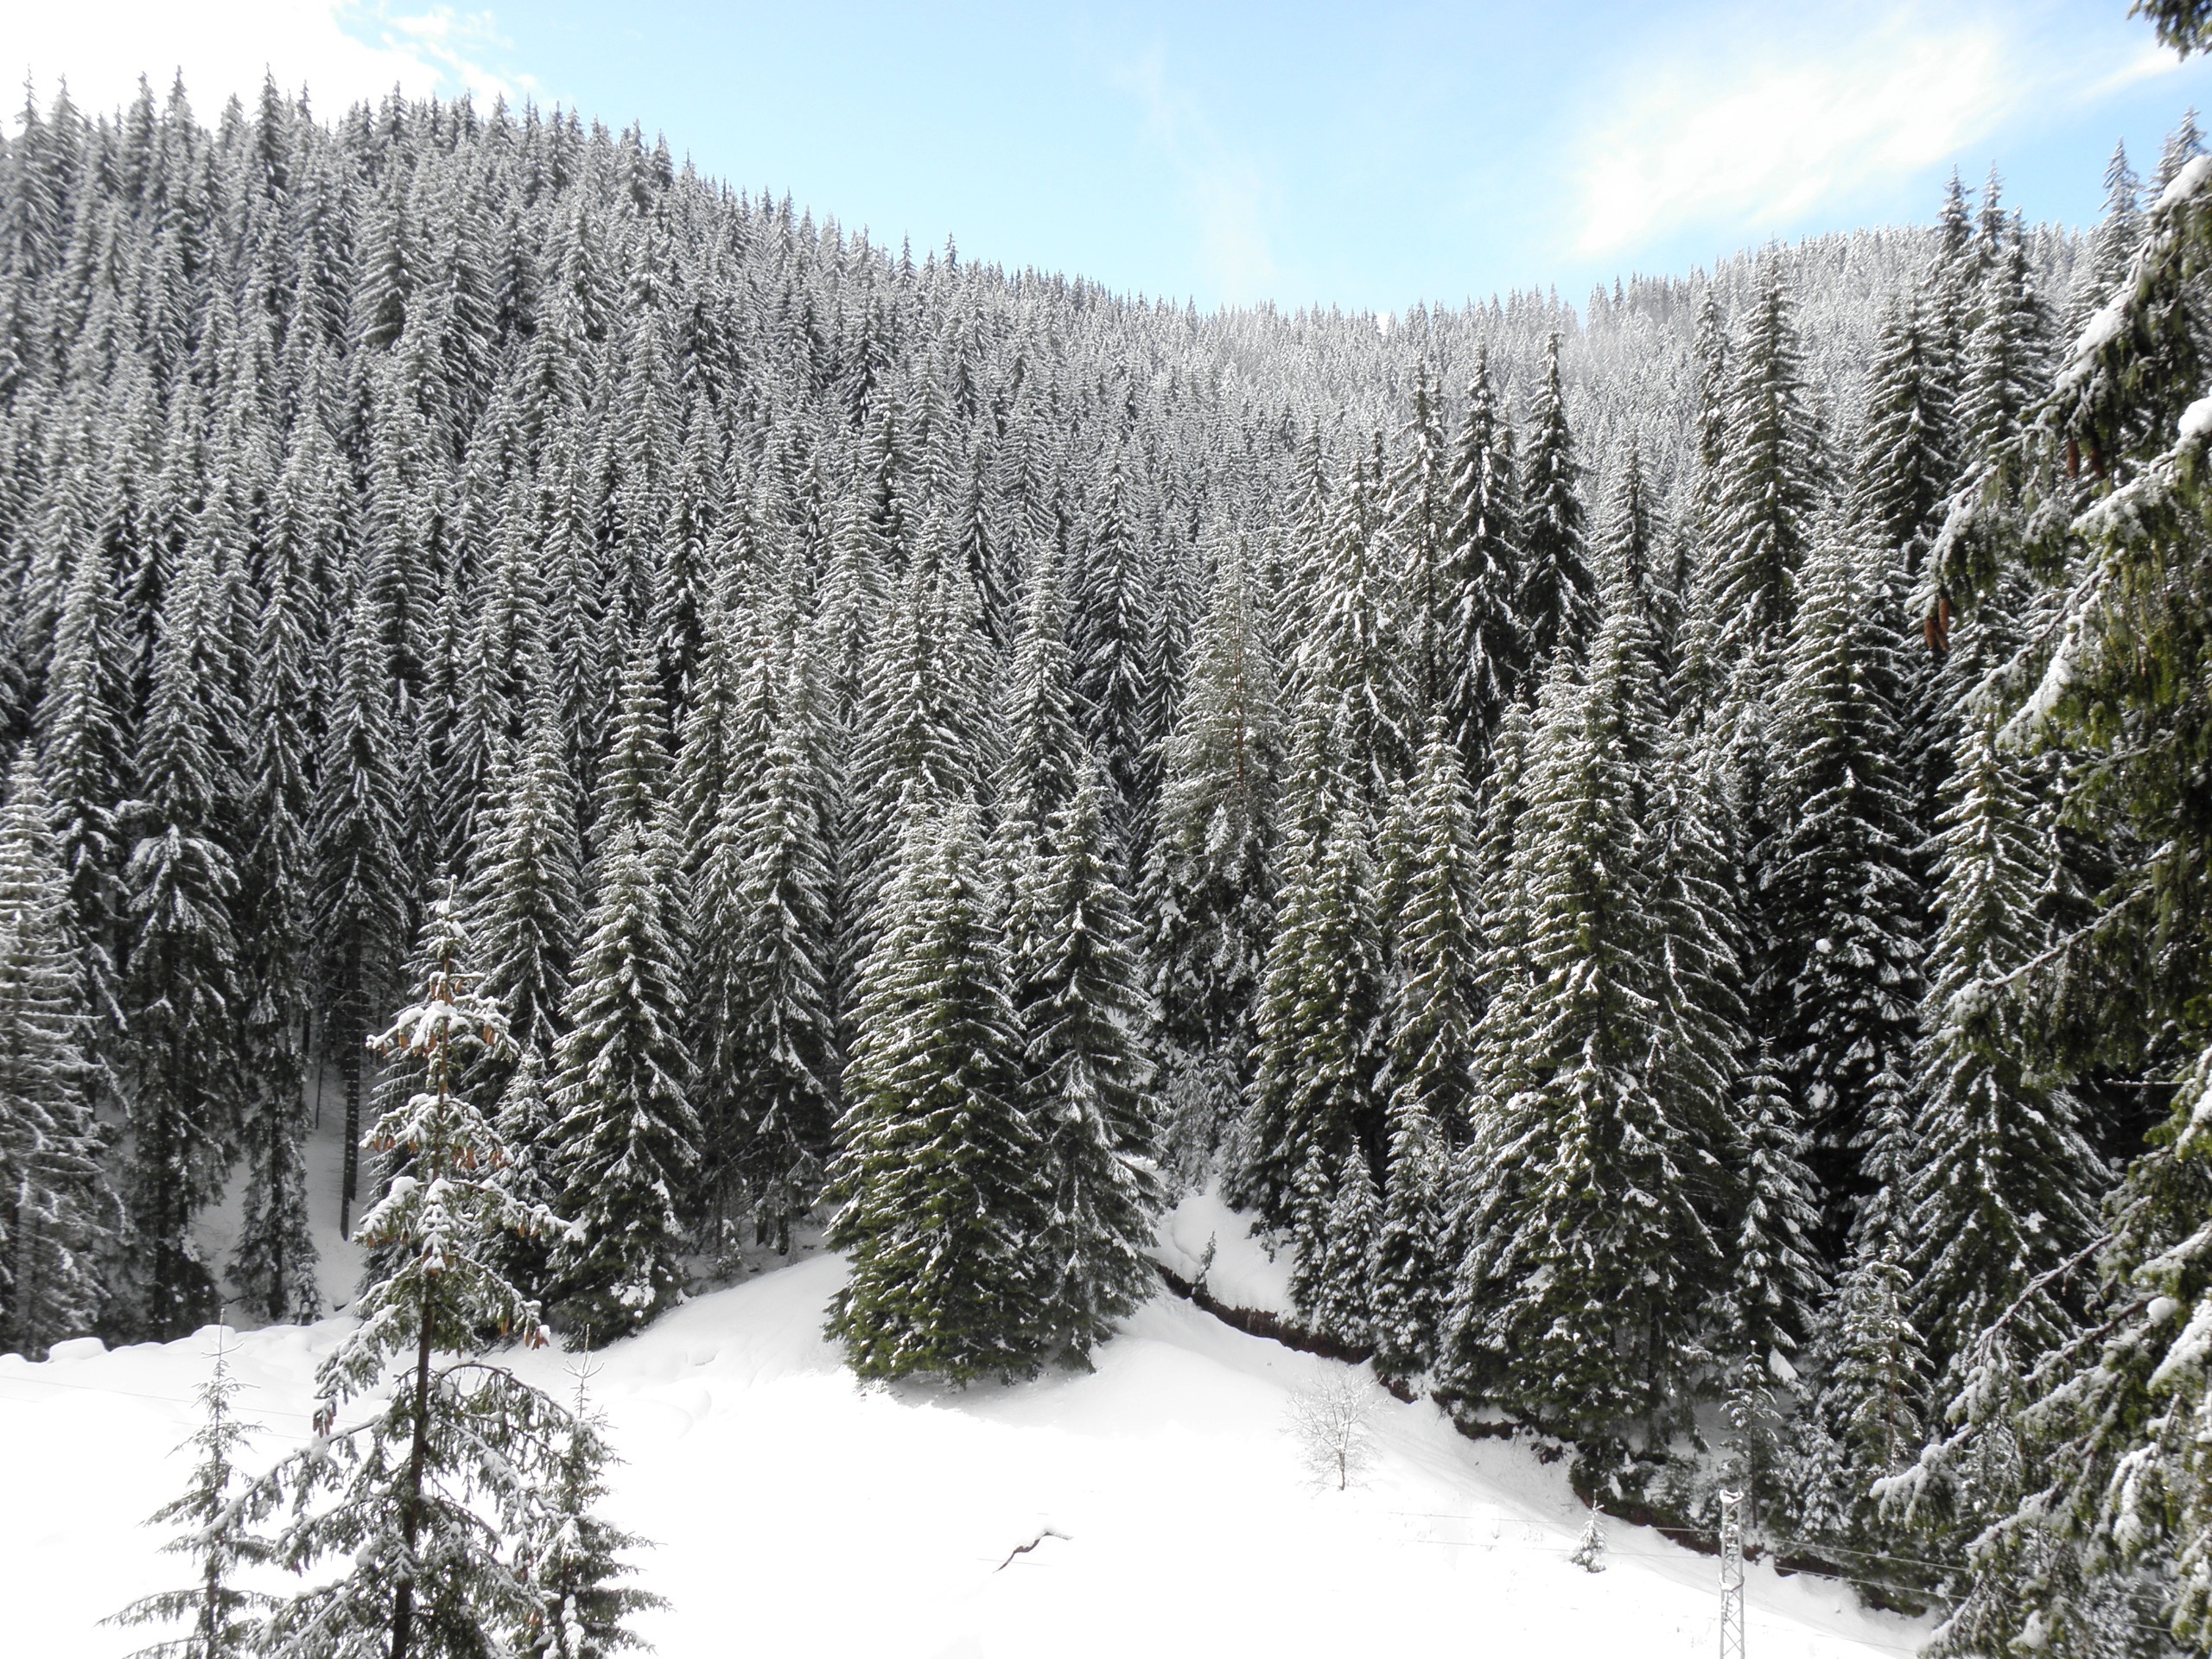 Winter wonderland in central rhodopes photo